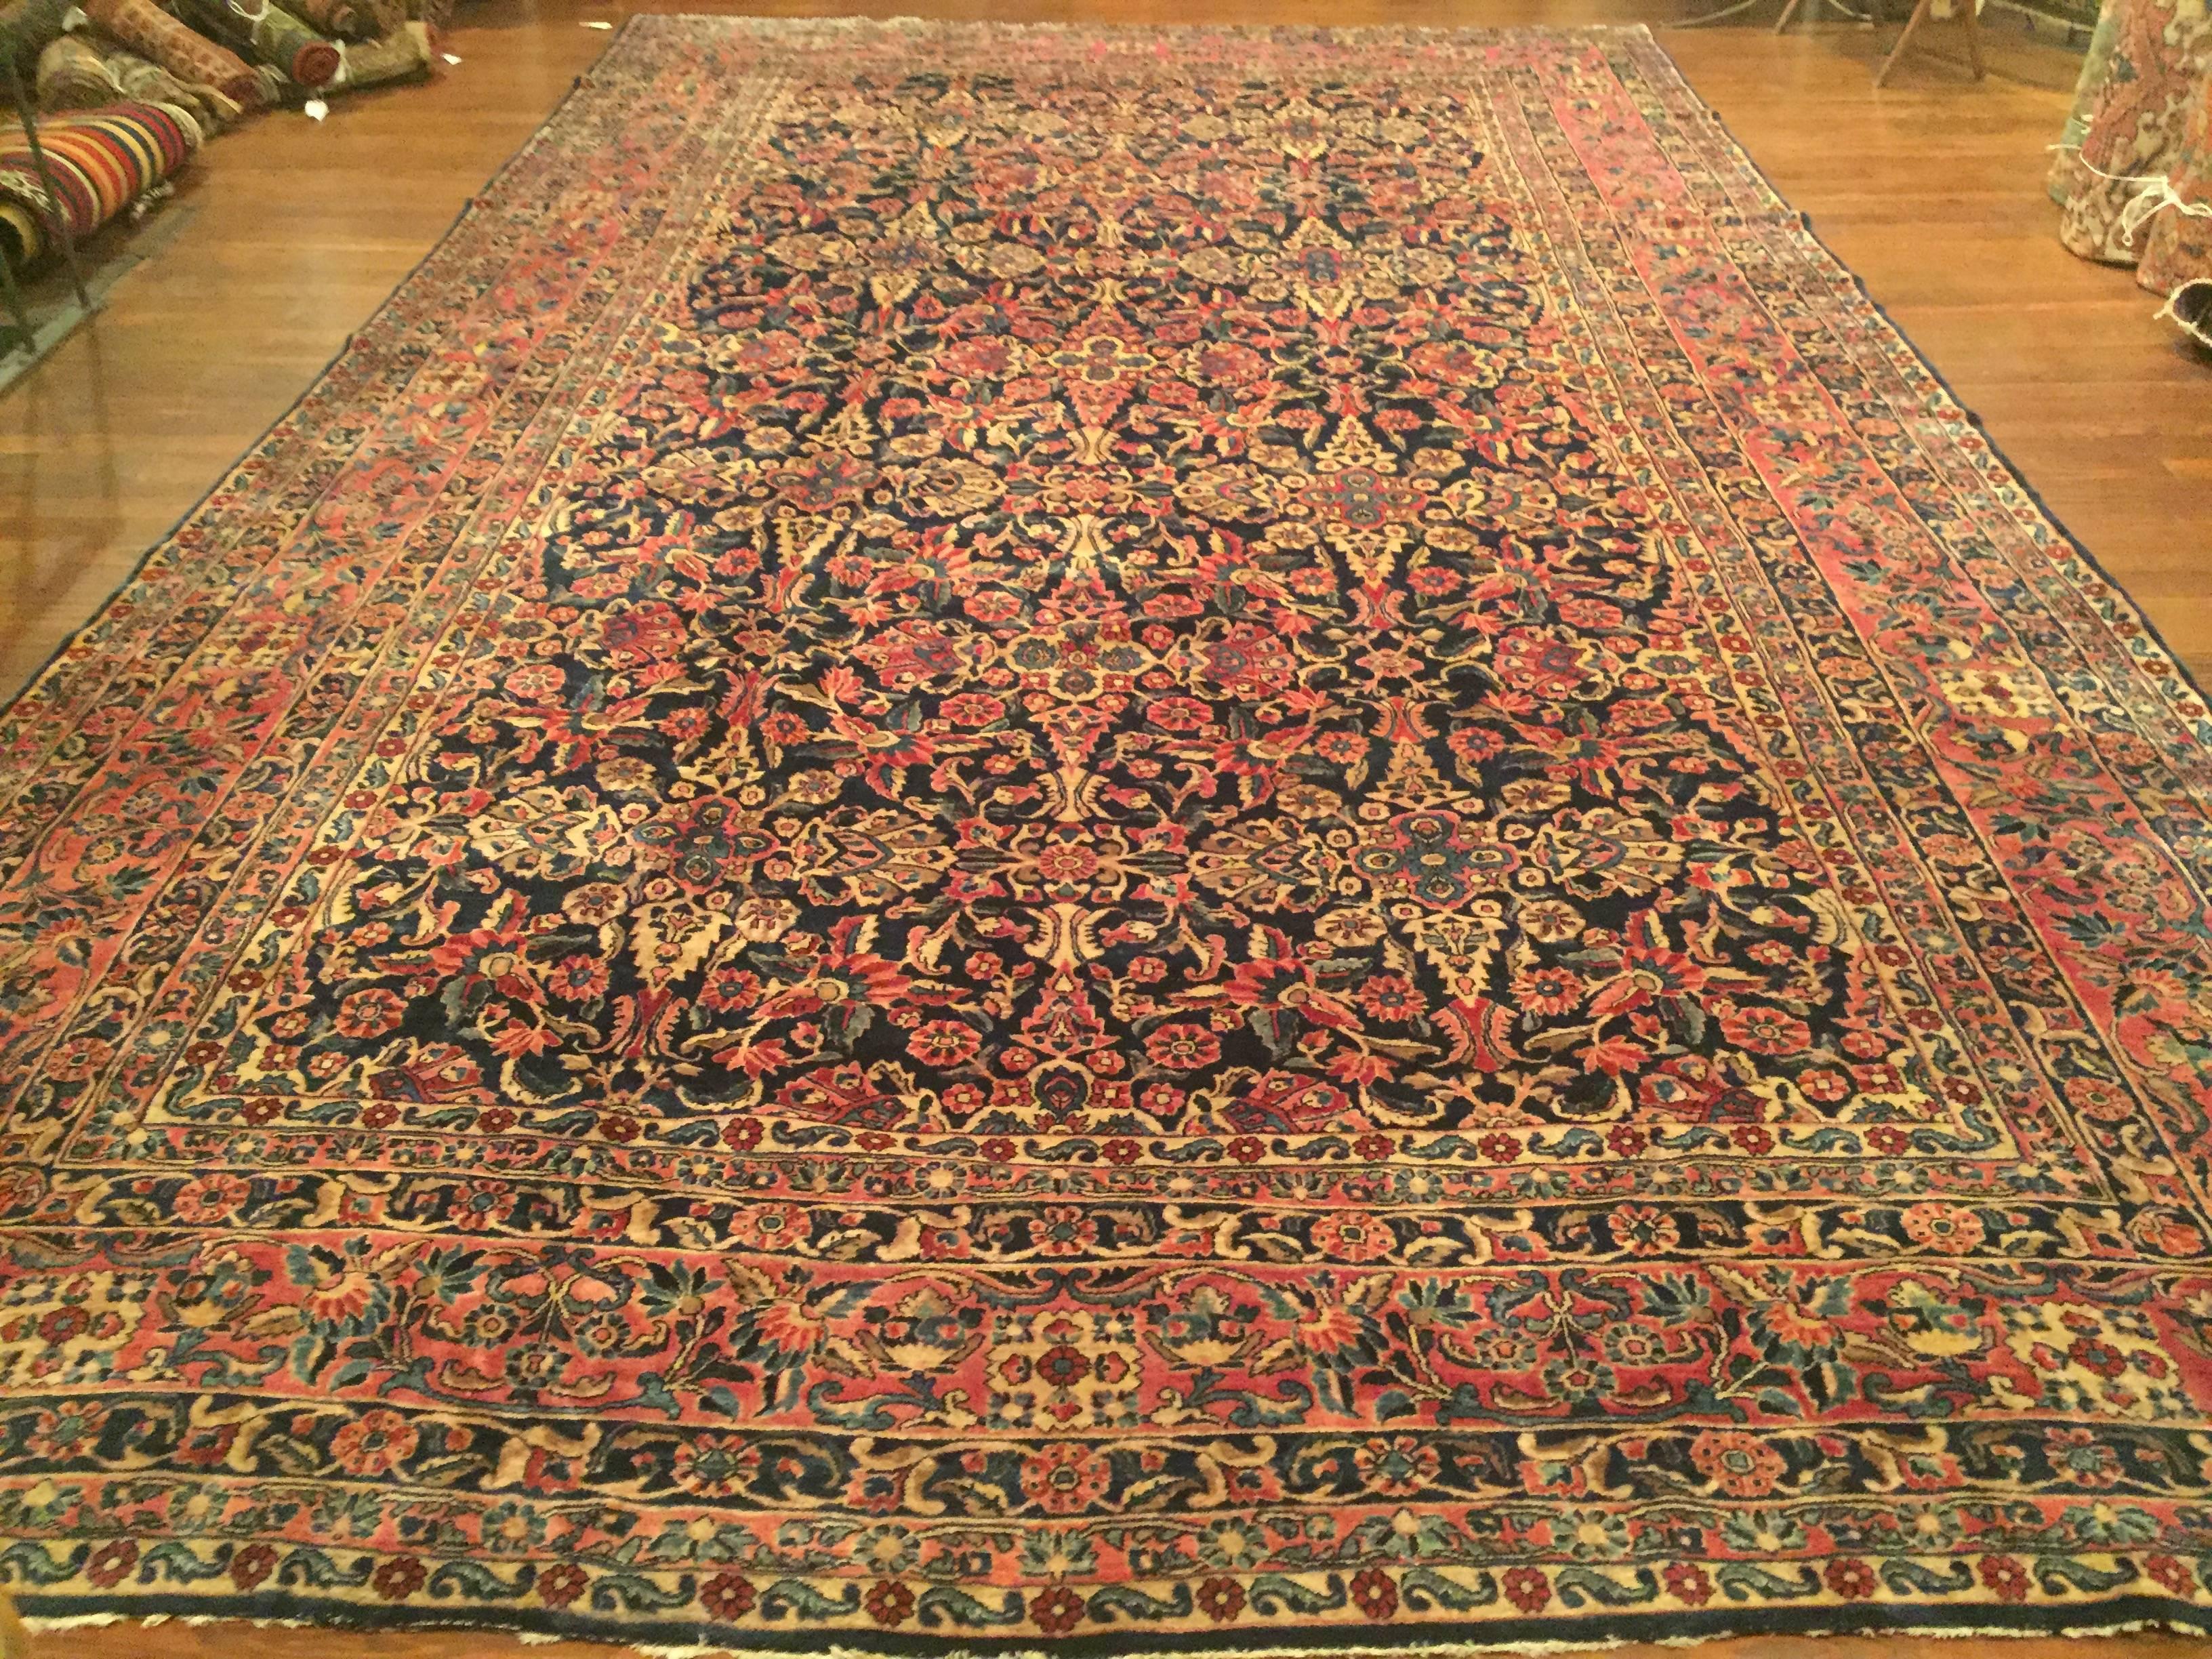 An antique Persian Sarouk rug, circa 1900.